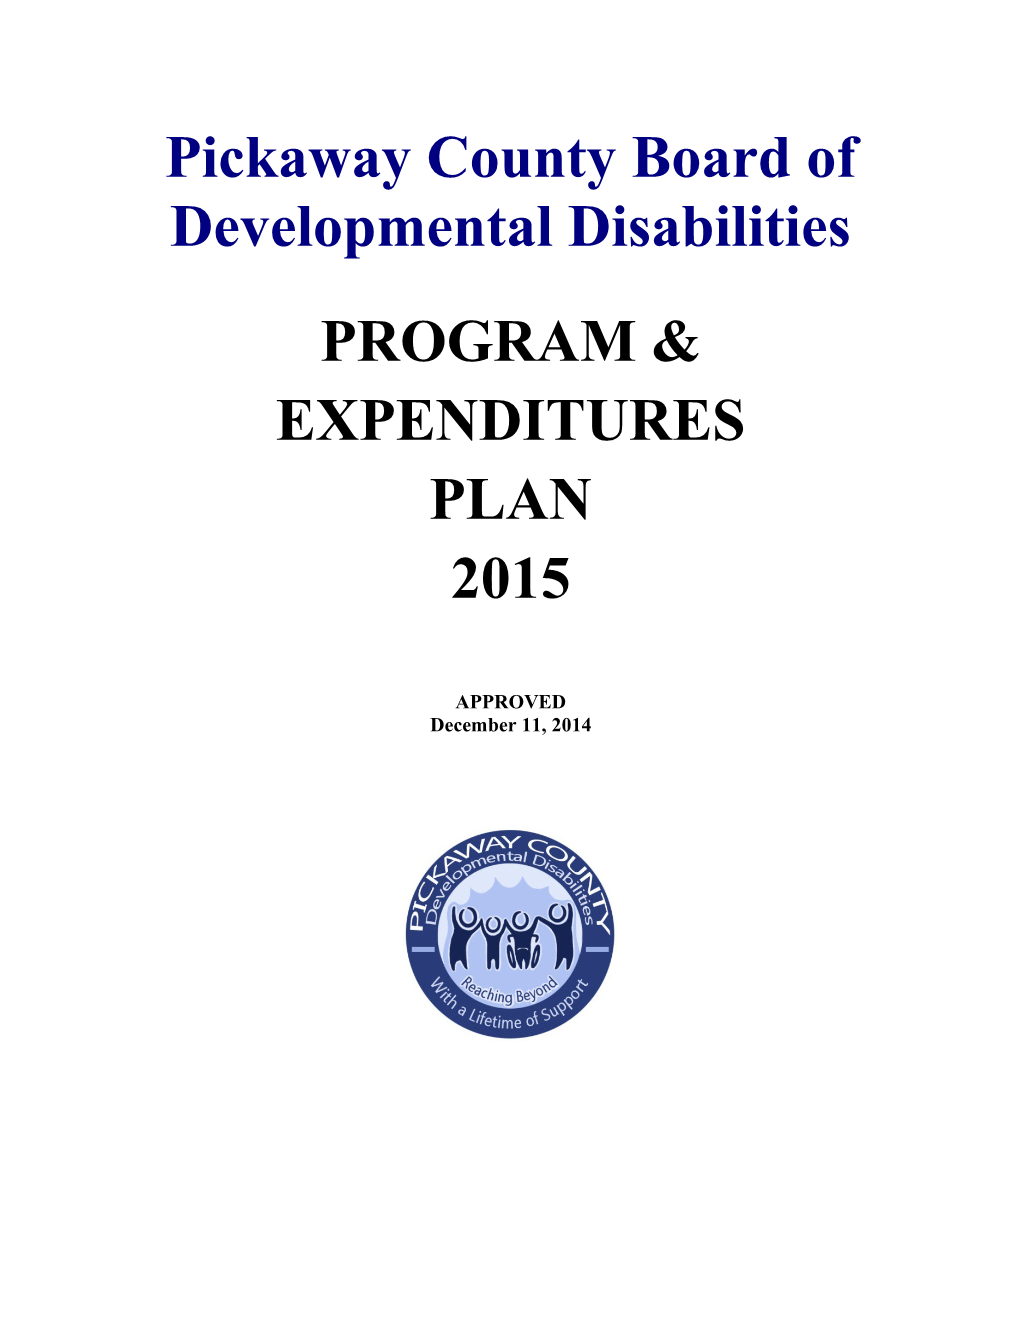 Pickaway County Board of Developmental Disabilities